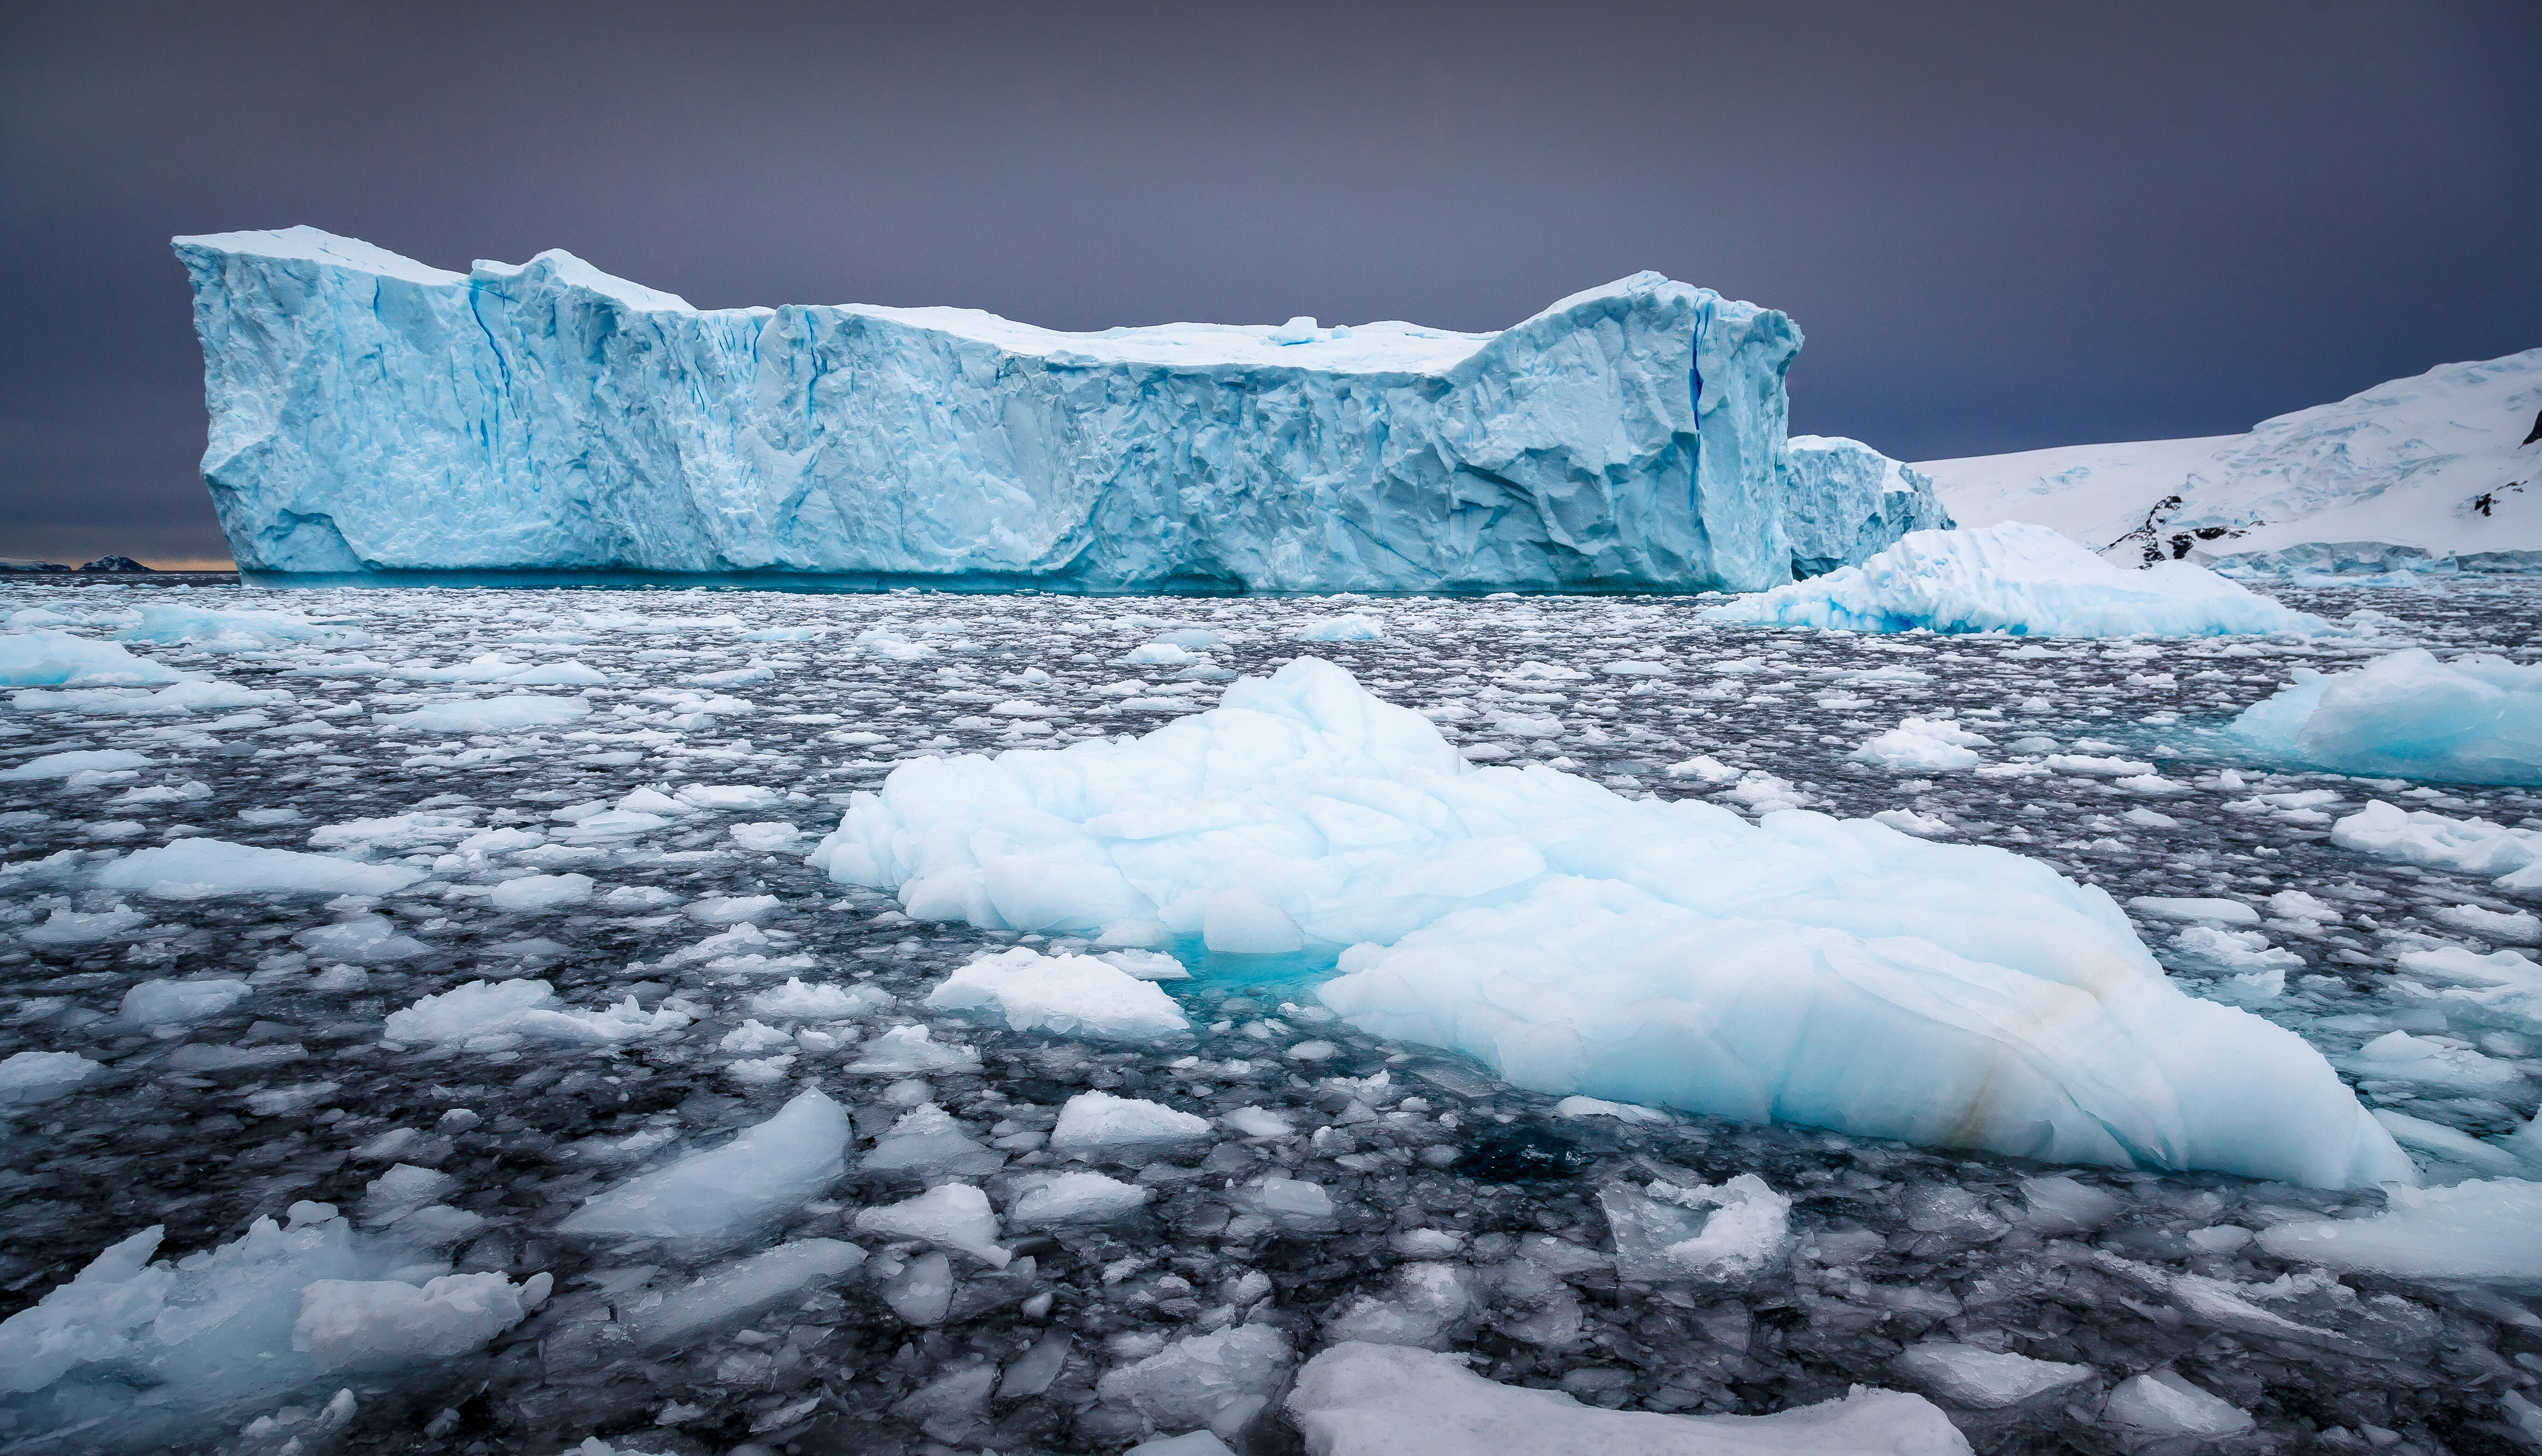 Таяние льдов мирового океана. Гренландия ледник Антарктида Арктика Гренландия. Арктика Антарктика Антарктида. Таяние ледников Антарктики. Антарктида Гренландия Арктика Северный Ледовитый океан.